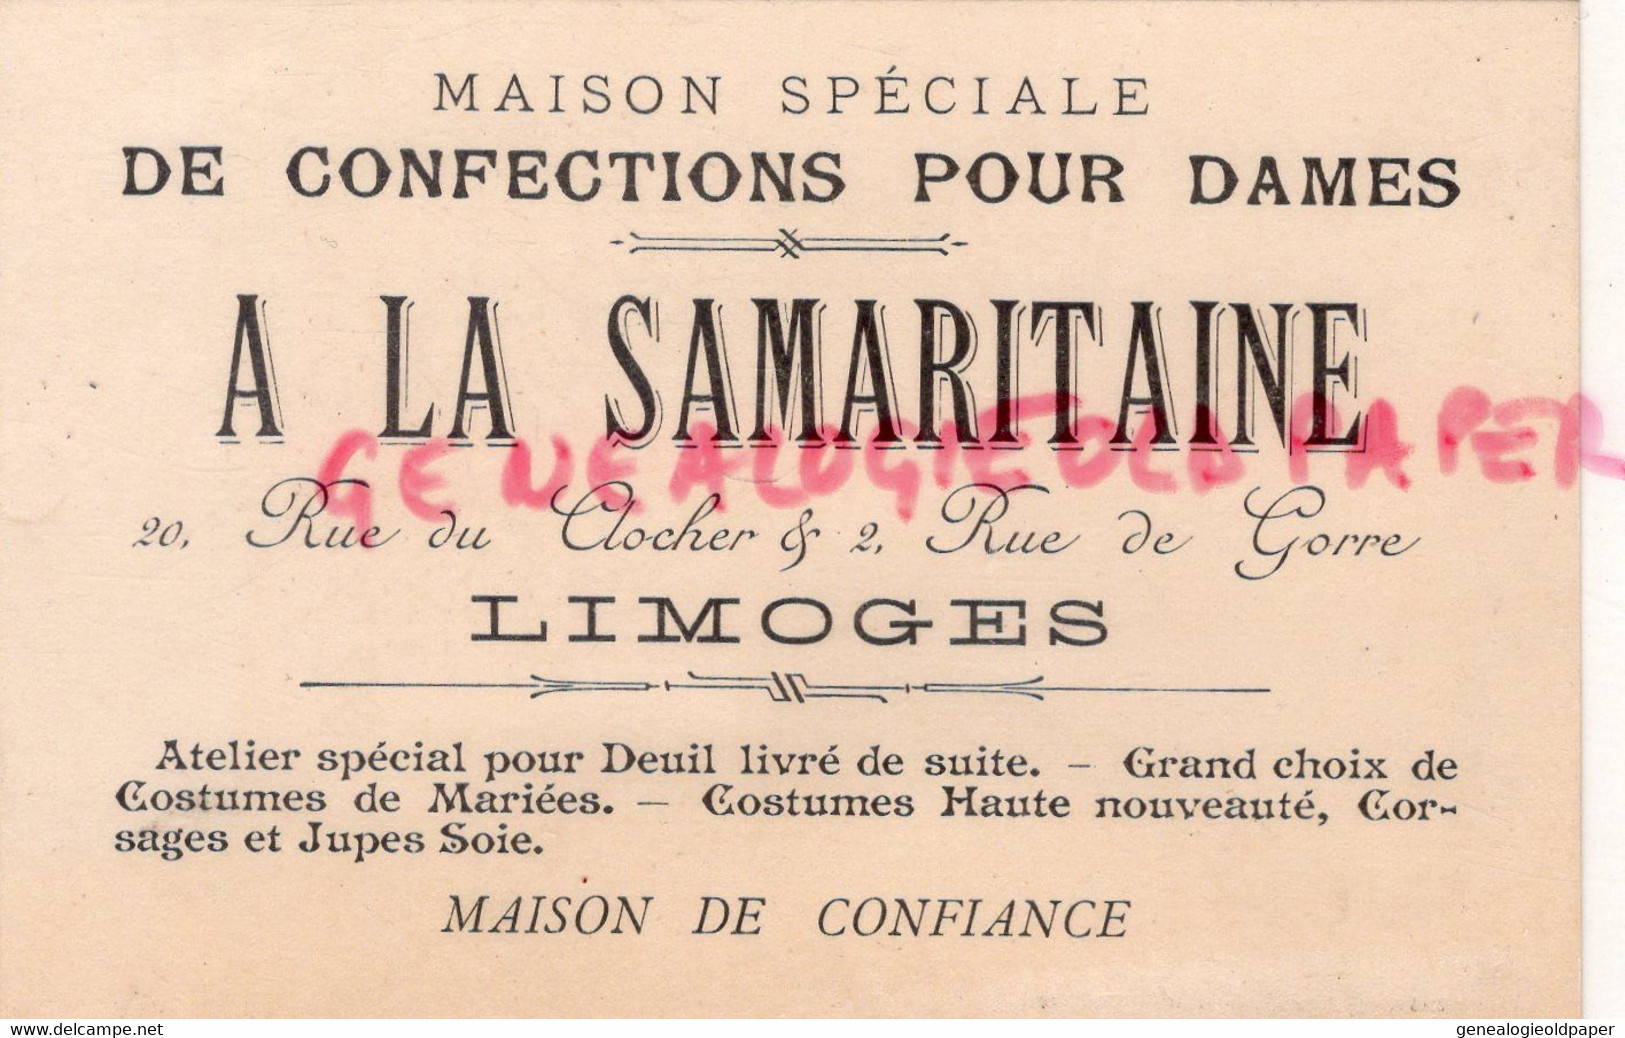 87- LIMOGES- RARE CARTE A LA SAMARITAINE -CONFECTIONS POUR DAMES-20 RUE DU CLOCHER -2 RUE DE GORRE-CONFECTION - Kleidung & Textil